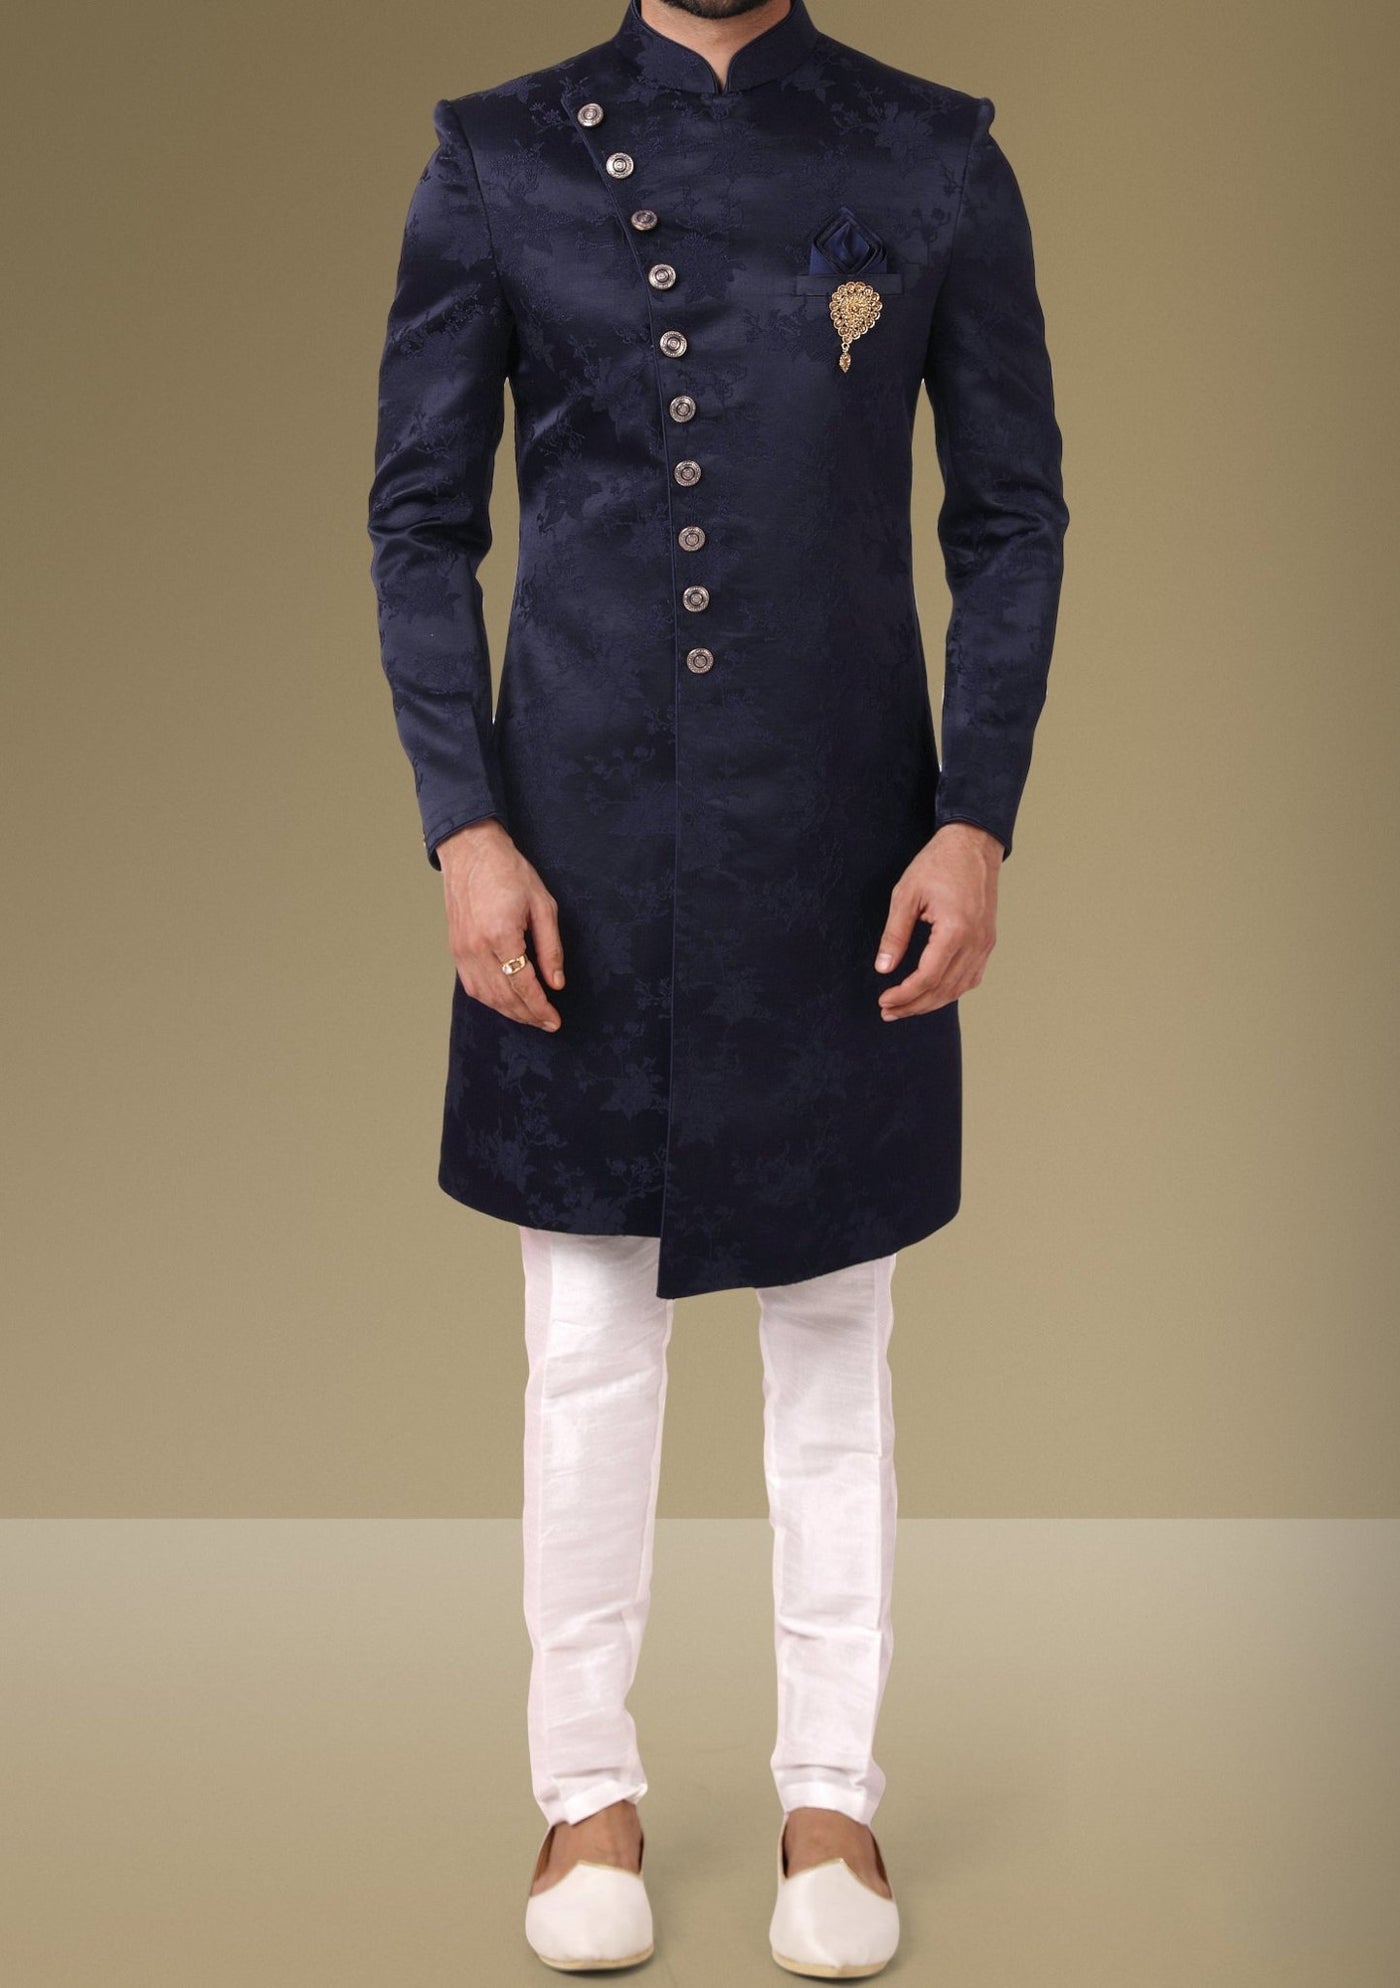 Men's Indo Western Party Wear Sherwani Suit - db18089